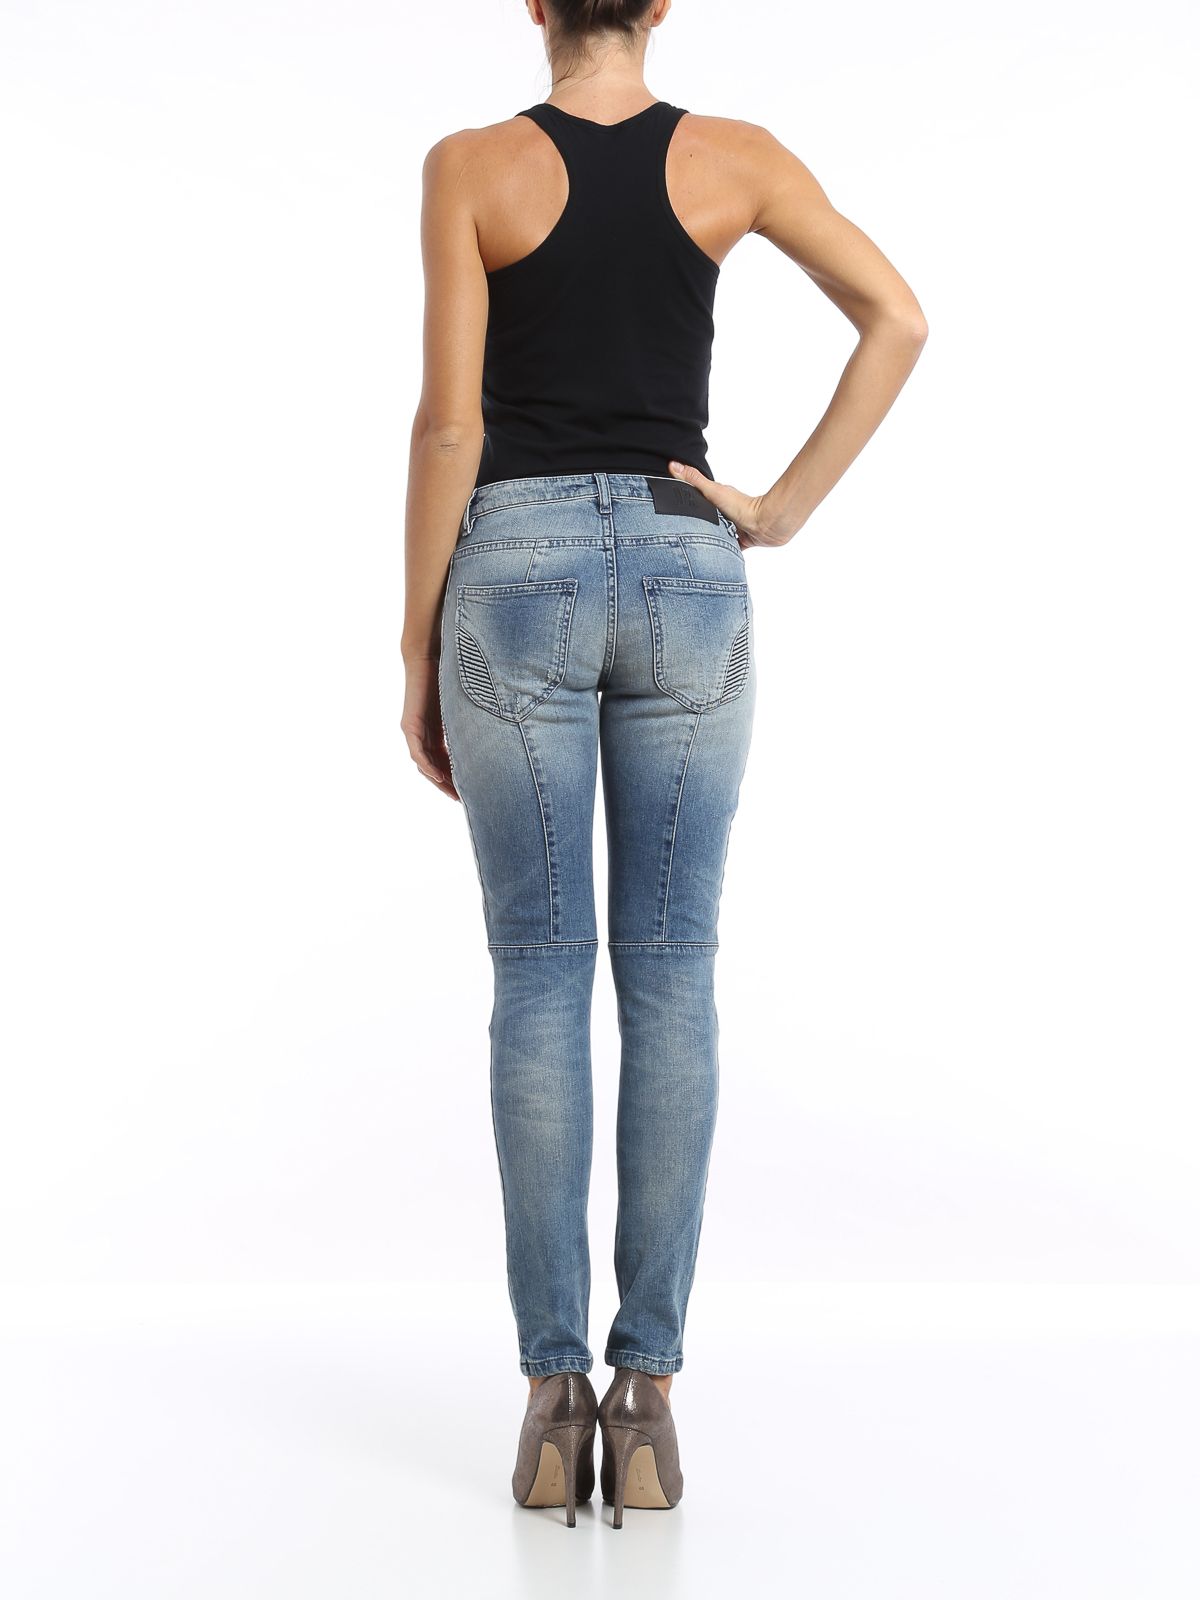 Pidgin gevinst grøntsager Skinny jeans Pierre Balmain - Biker jeans - FP5358JJ362705